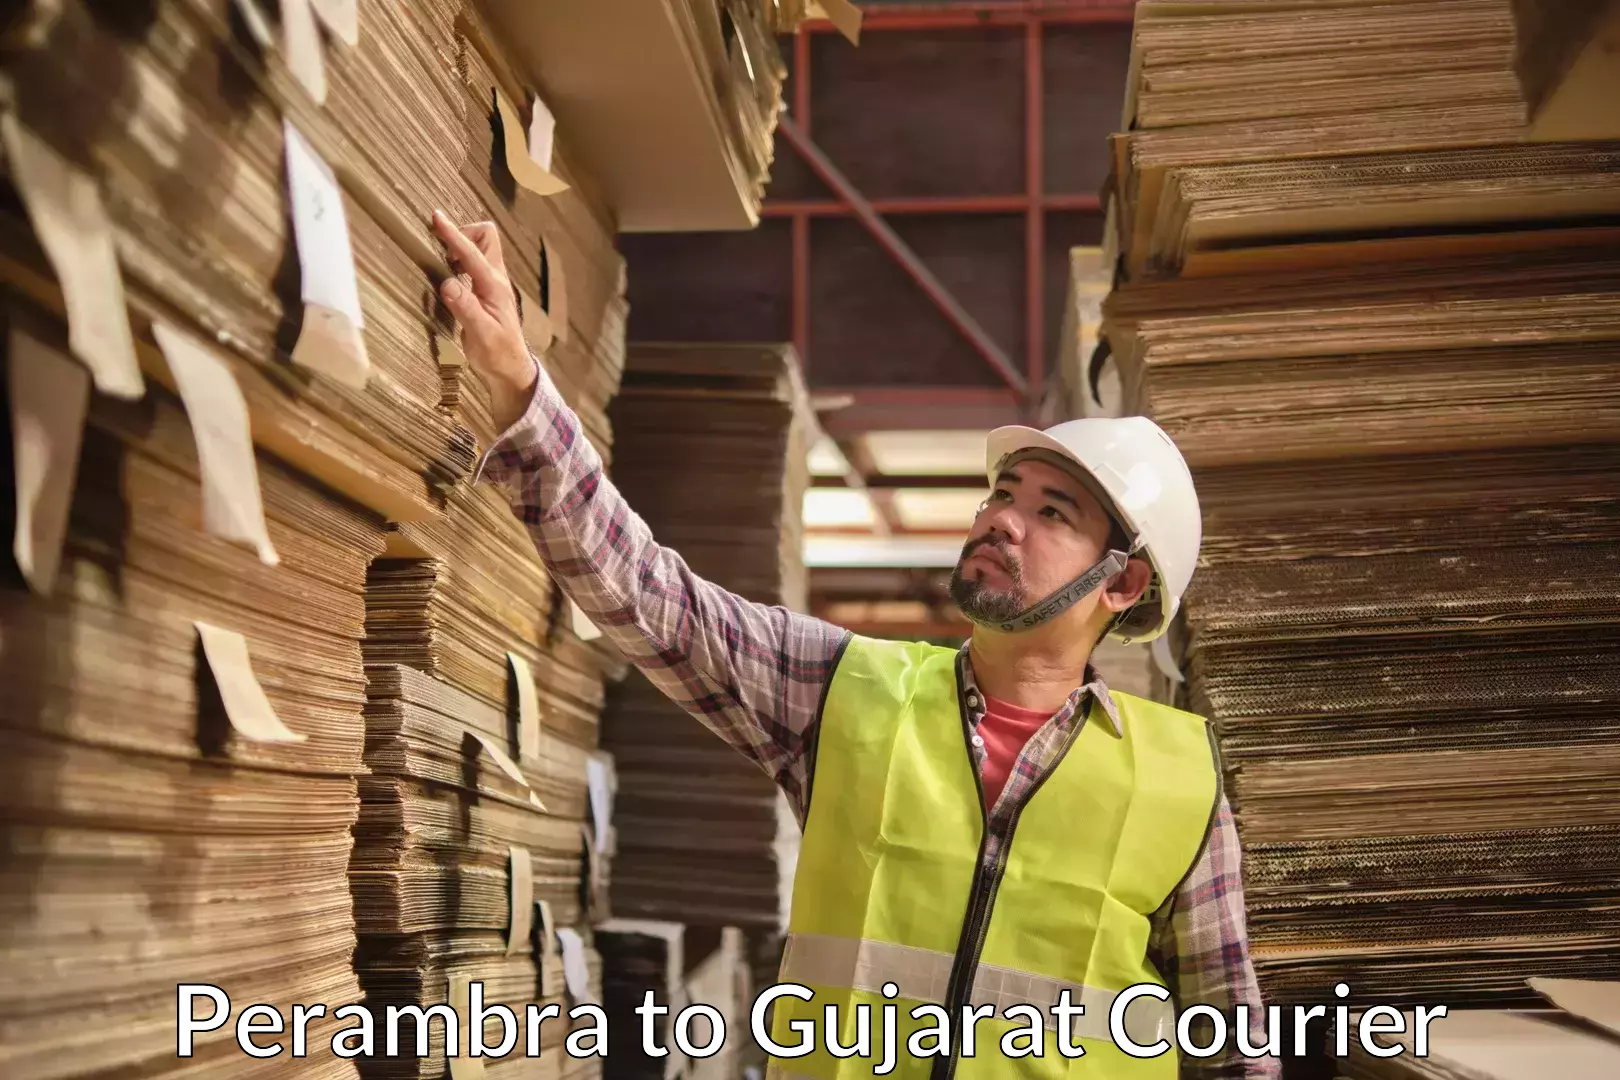 Furniture moving experts Perambra to Gujarat